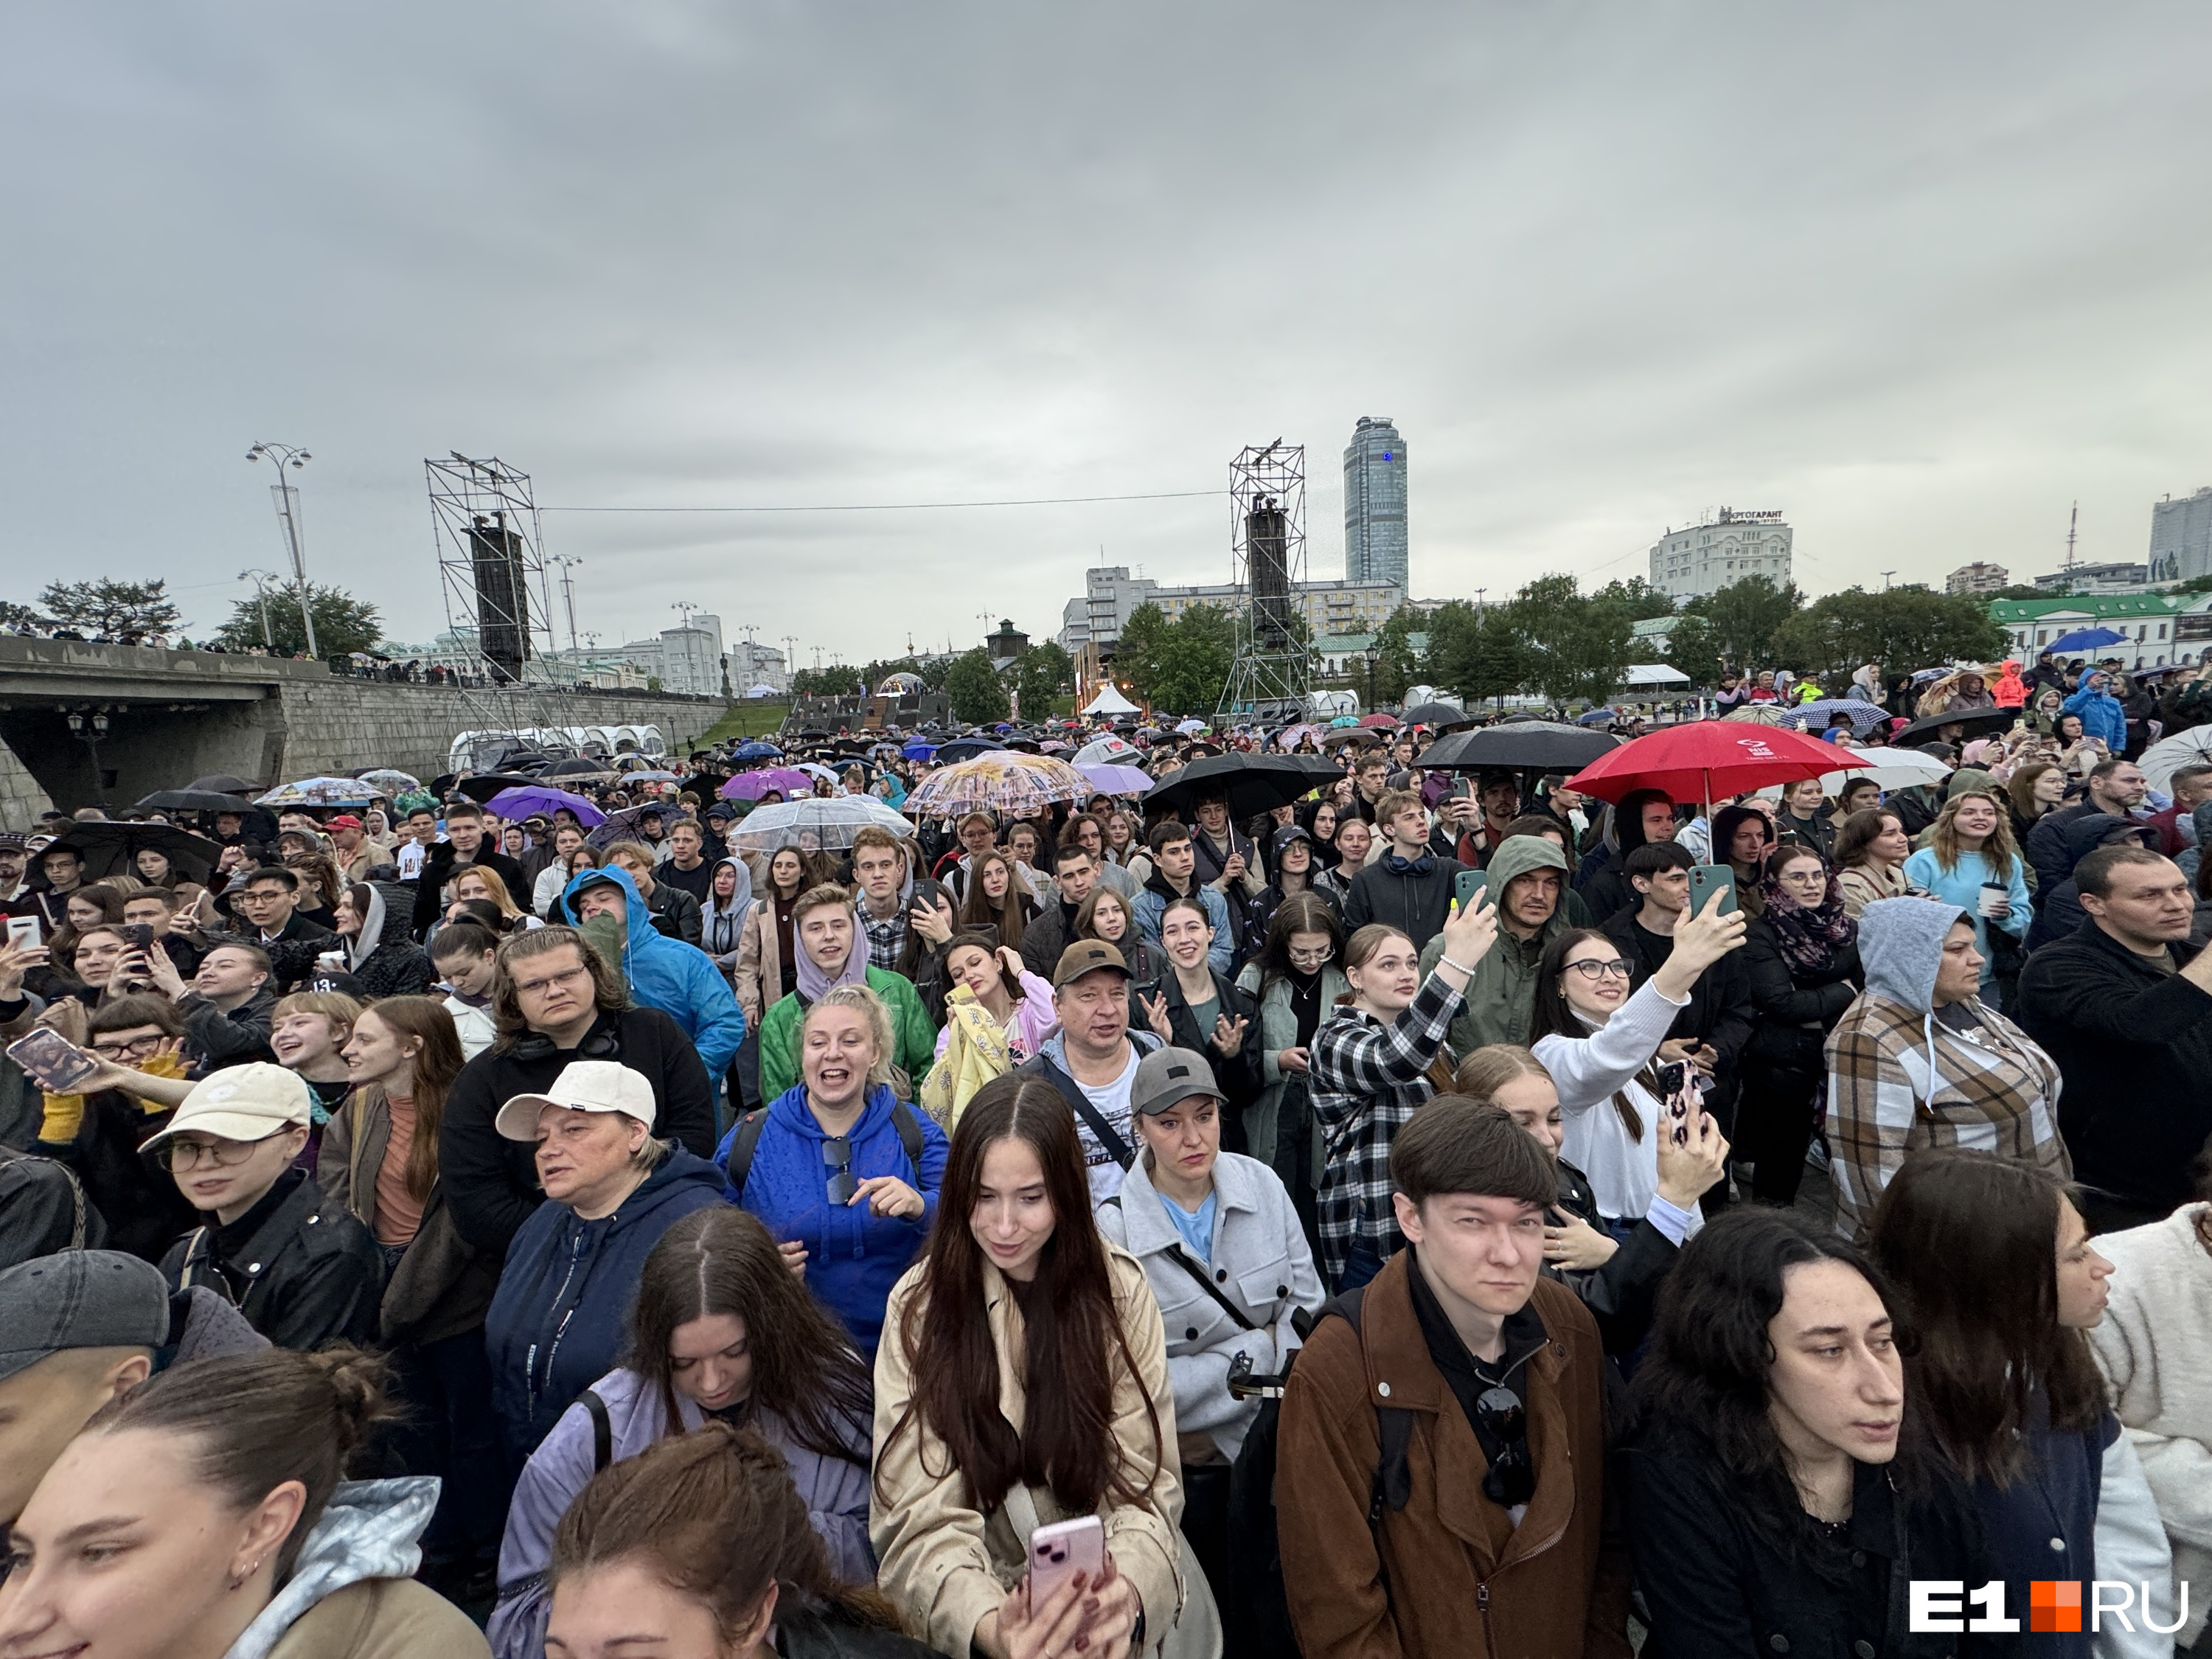 Толпа собралась под сильным дождем в центре Екатеринбурга. Они ждали концерт Uma2rman